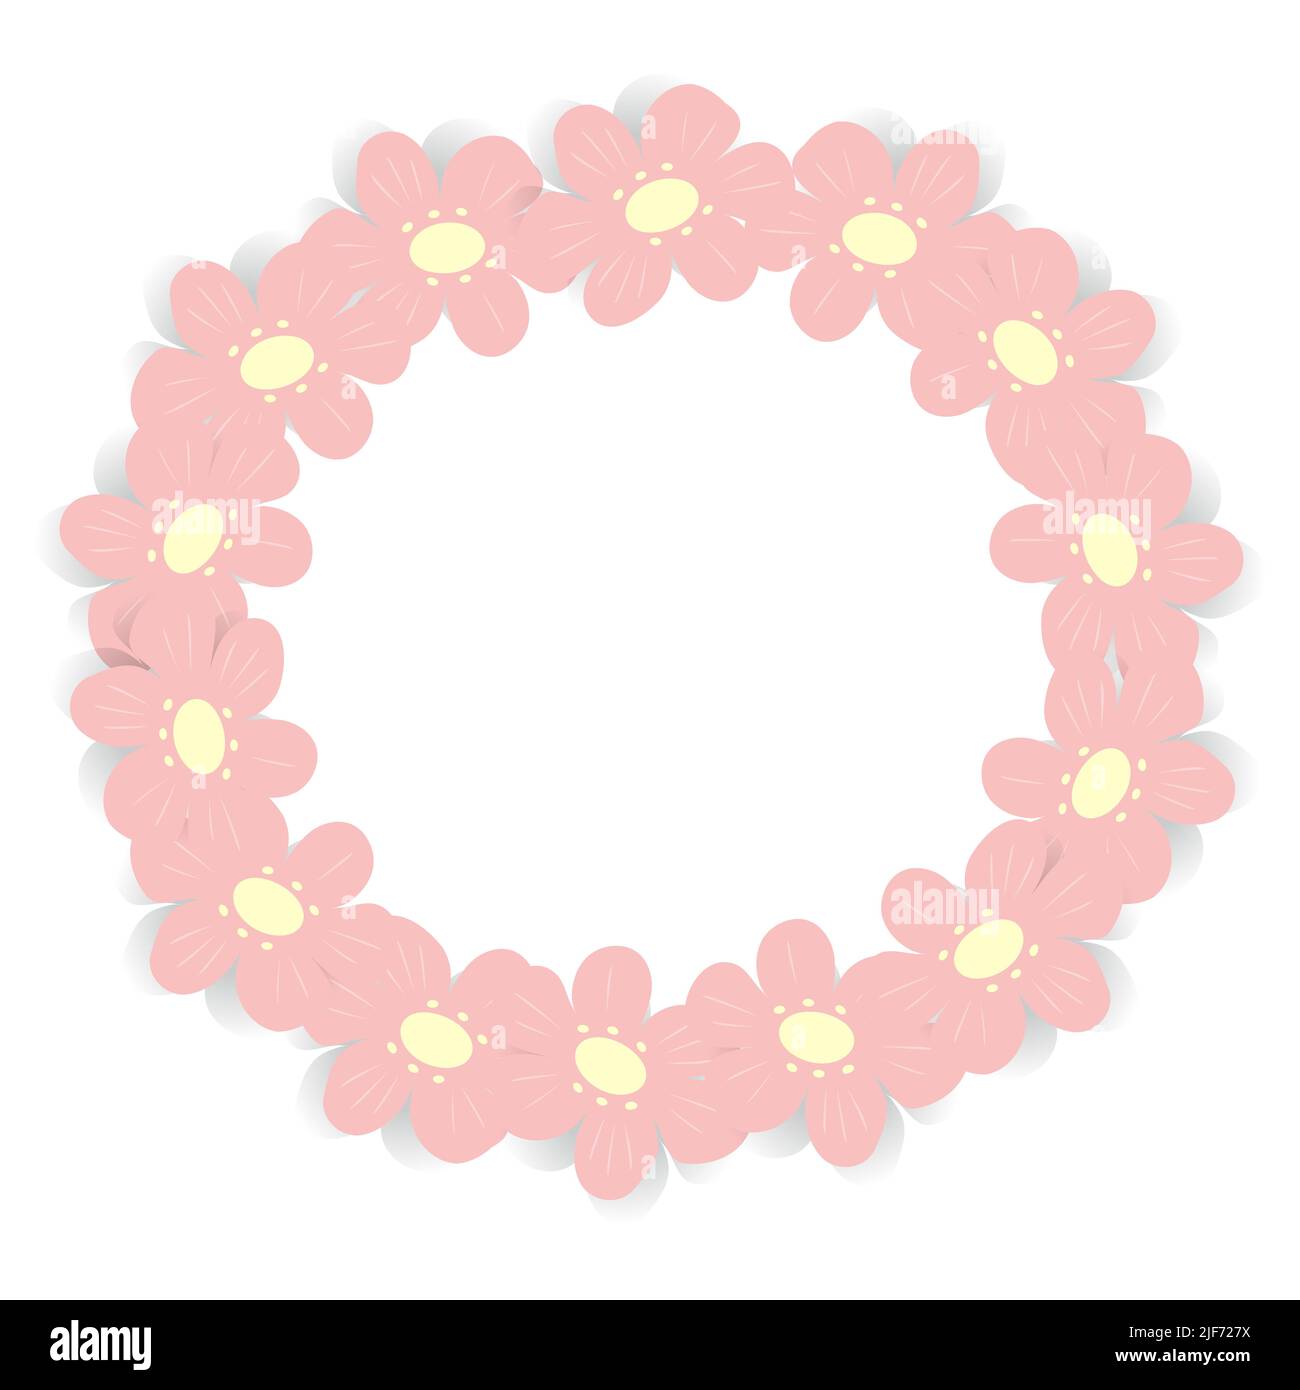 Abstrakter Kreisrahmen mit einem Bild von Blumen in trendy rosa Farbe. Copyspace. Vorlage. Lifestyle. Vorlage für Poster, Postkarte, Grußkarte, Preisschild, Lifestyle. Stock Vektor